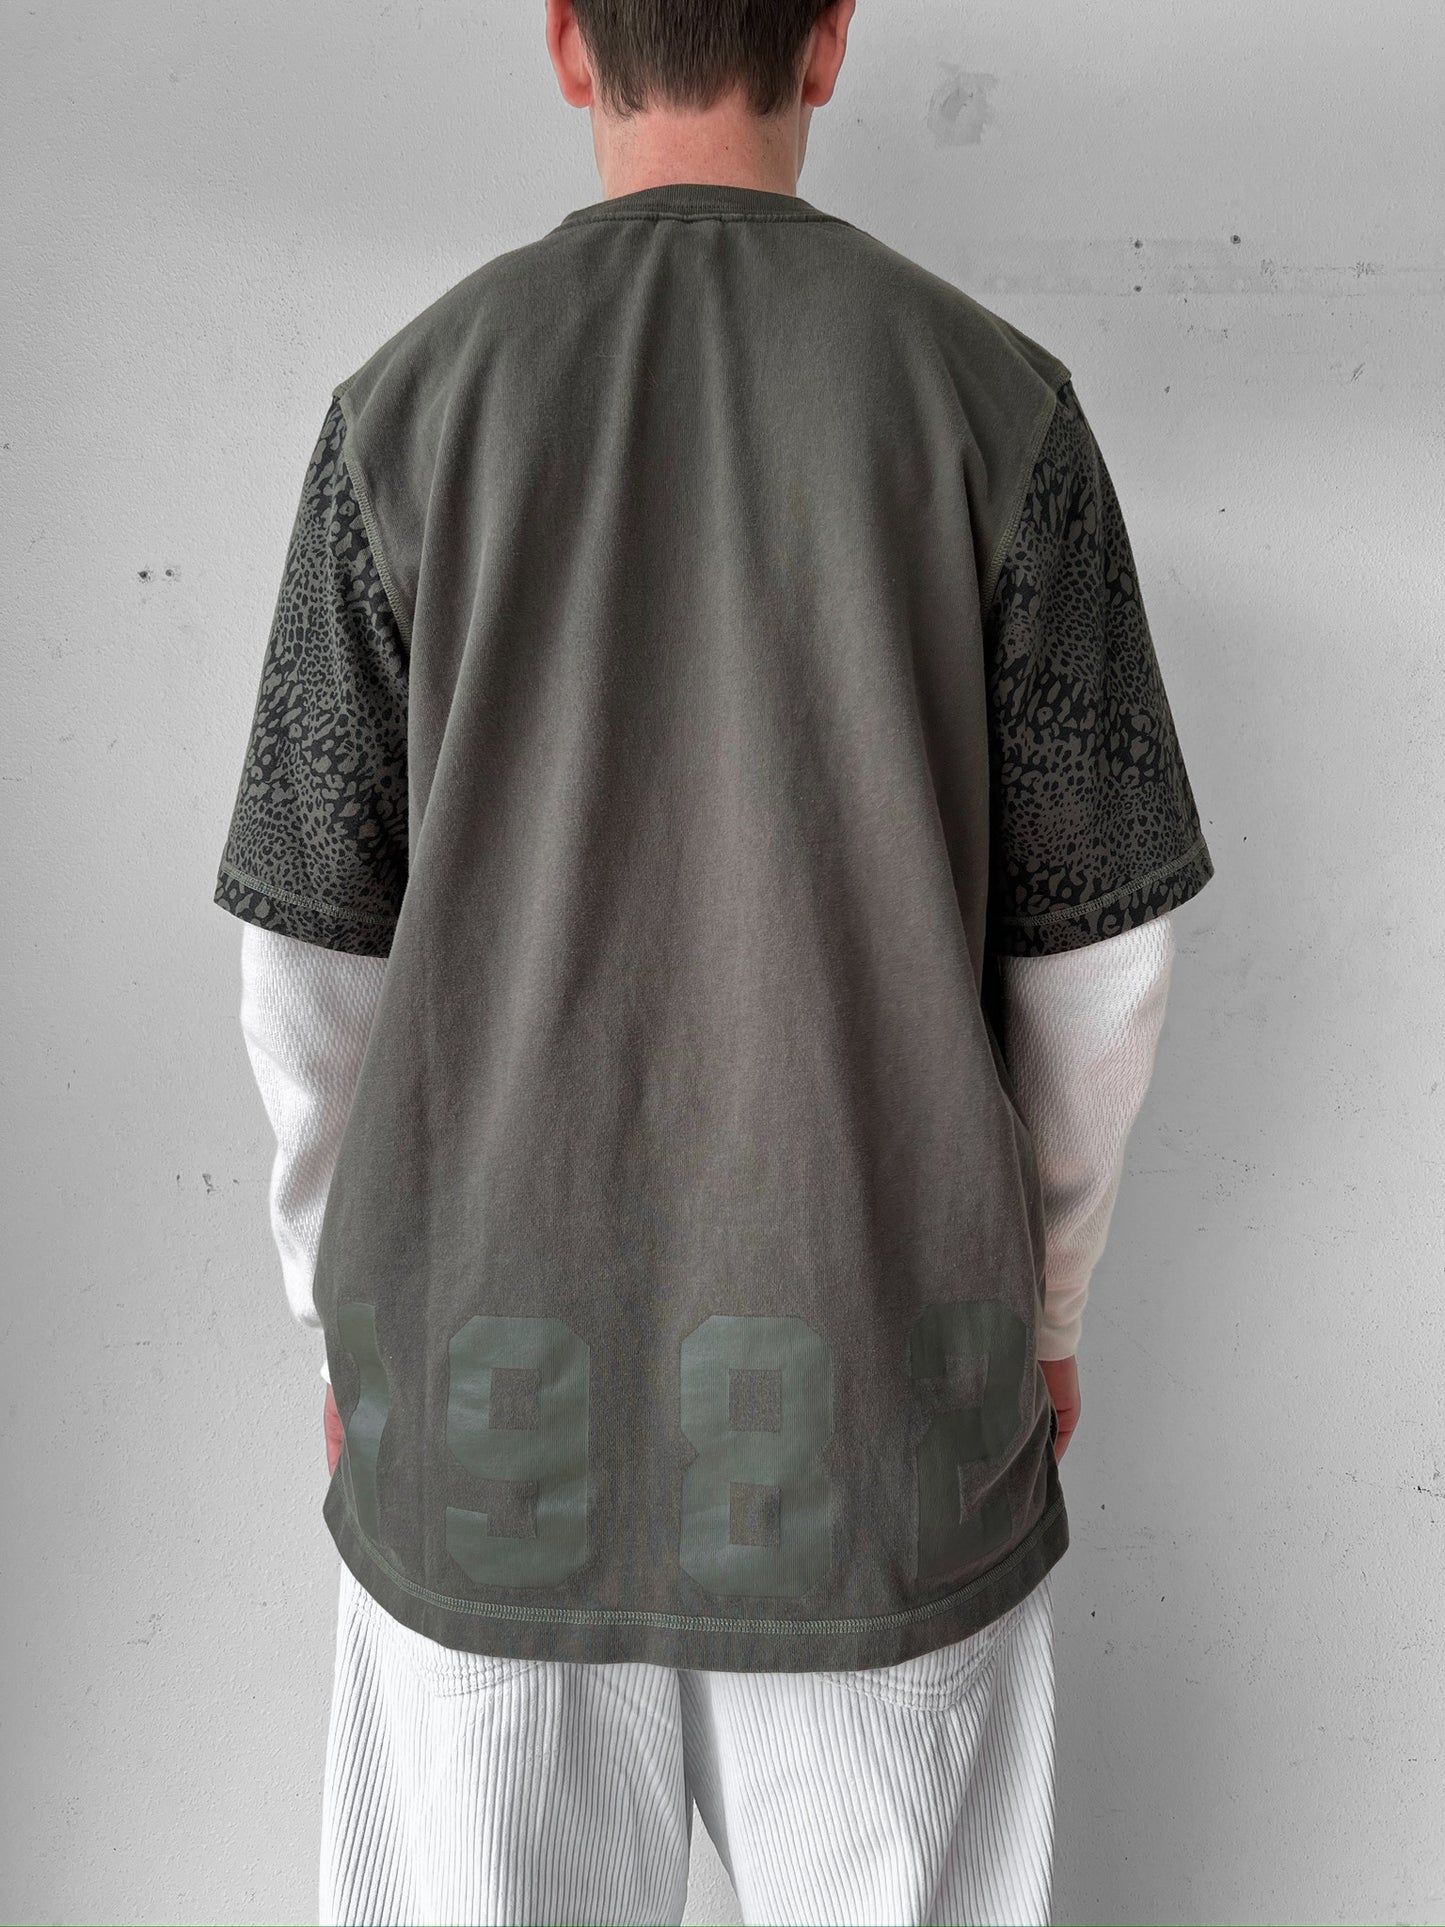 90’s Nike Swoosh Heavyweight Shirt - XL